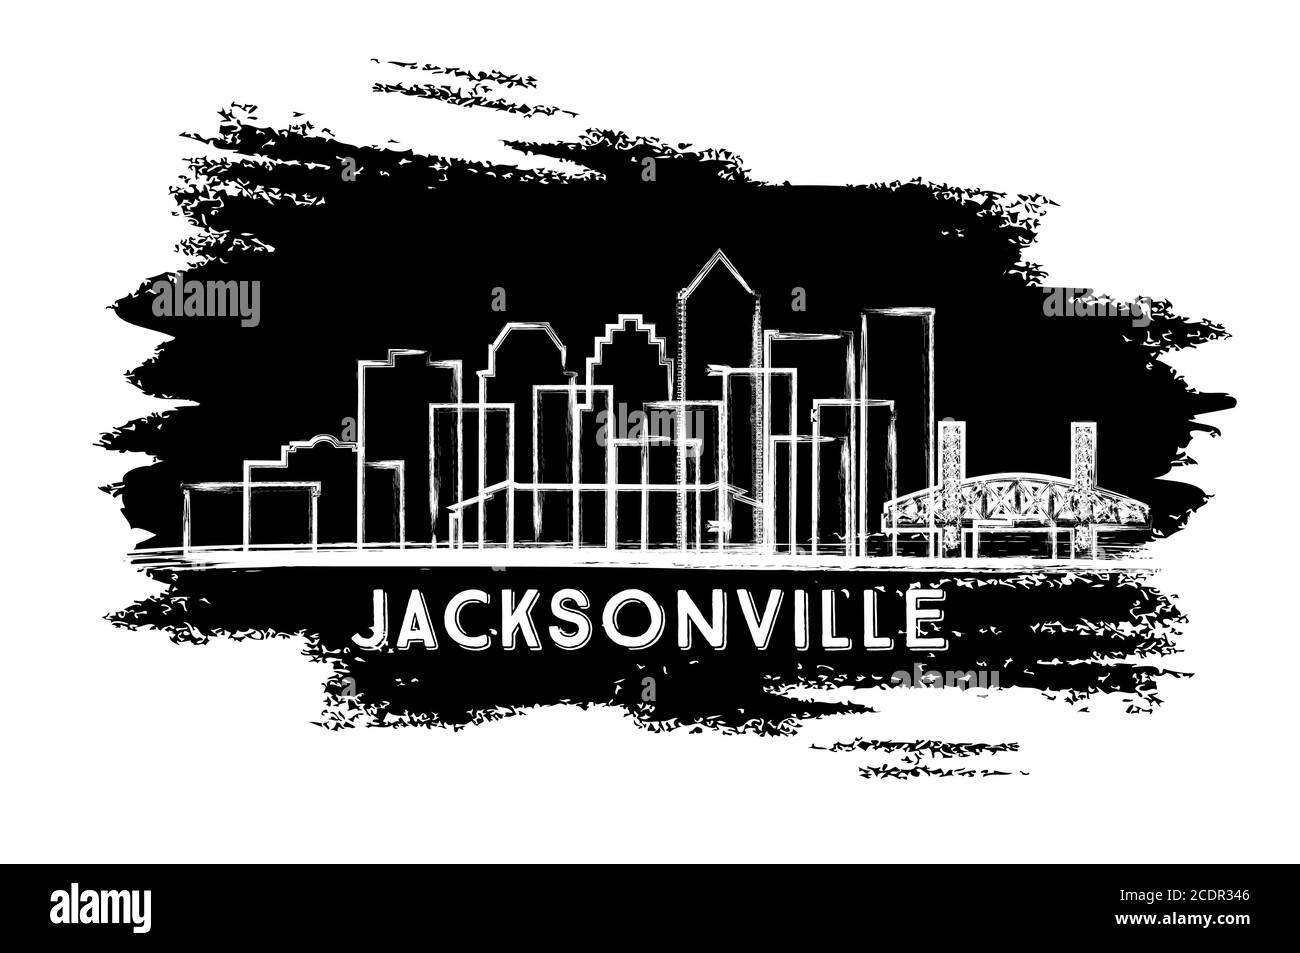 Jacksonville Florida City Skyline Silhouette. Handgezeichnete Skizze. Business Travel und Tourismus Konzept mit historischer Architektur. Vektorgrafik. Stock Vektor